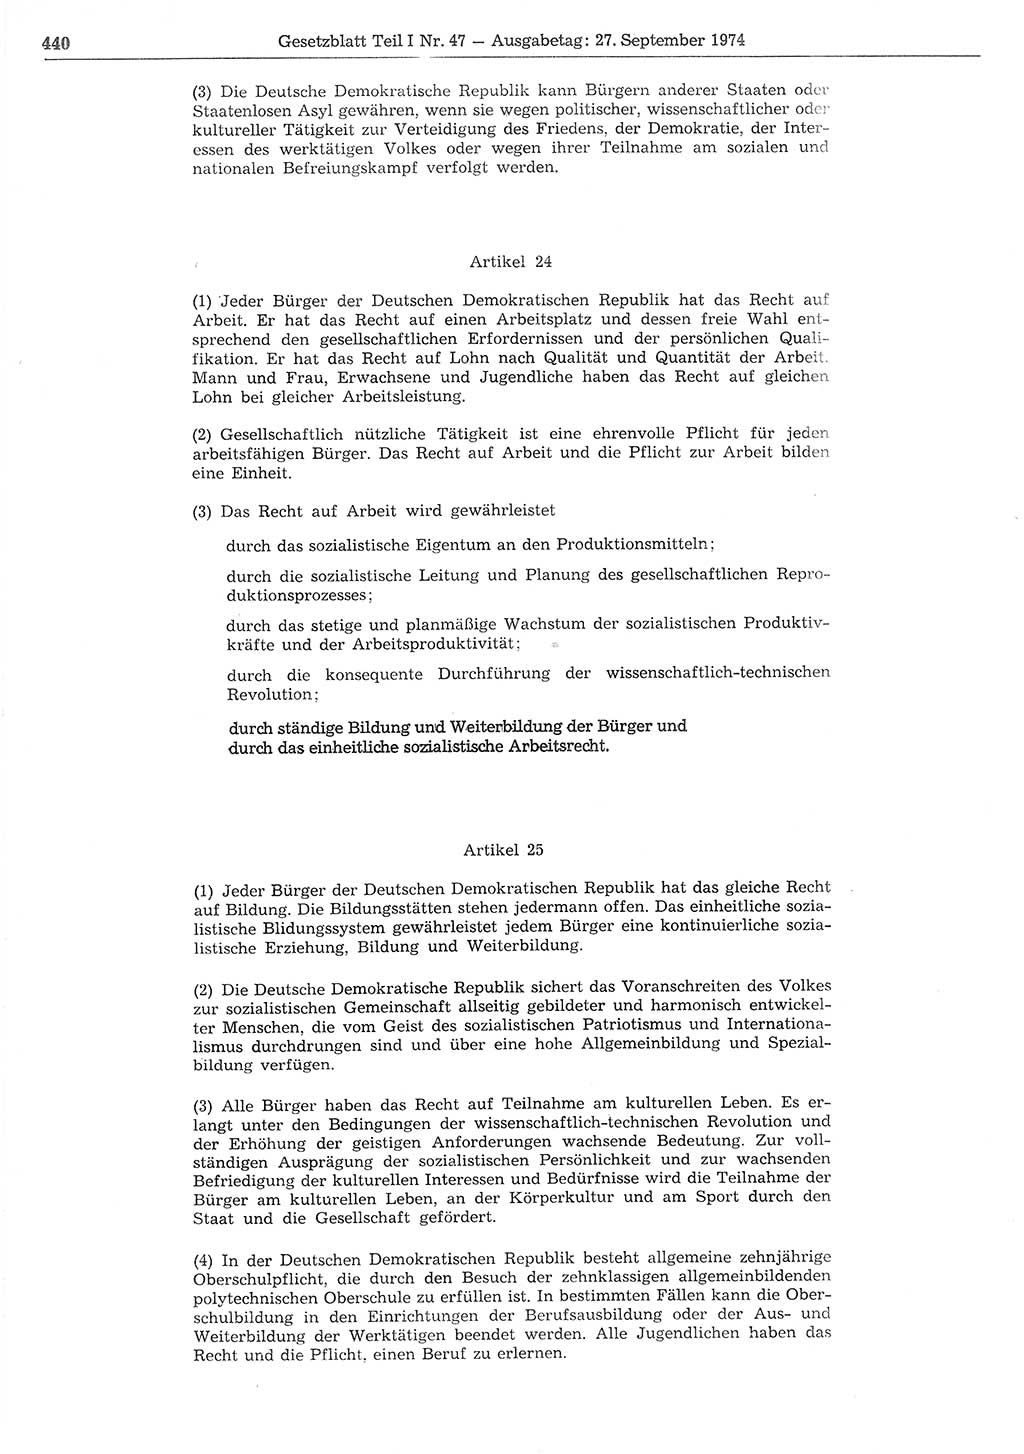 Gesetzblatt (GBl.) der Deutschen Demokratischen Republik (DDR) Teil Ⅰ 1974, Seite 440 (GBl. DDR Ⅰ 1974, S. 440)